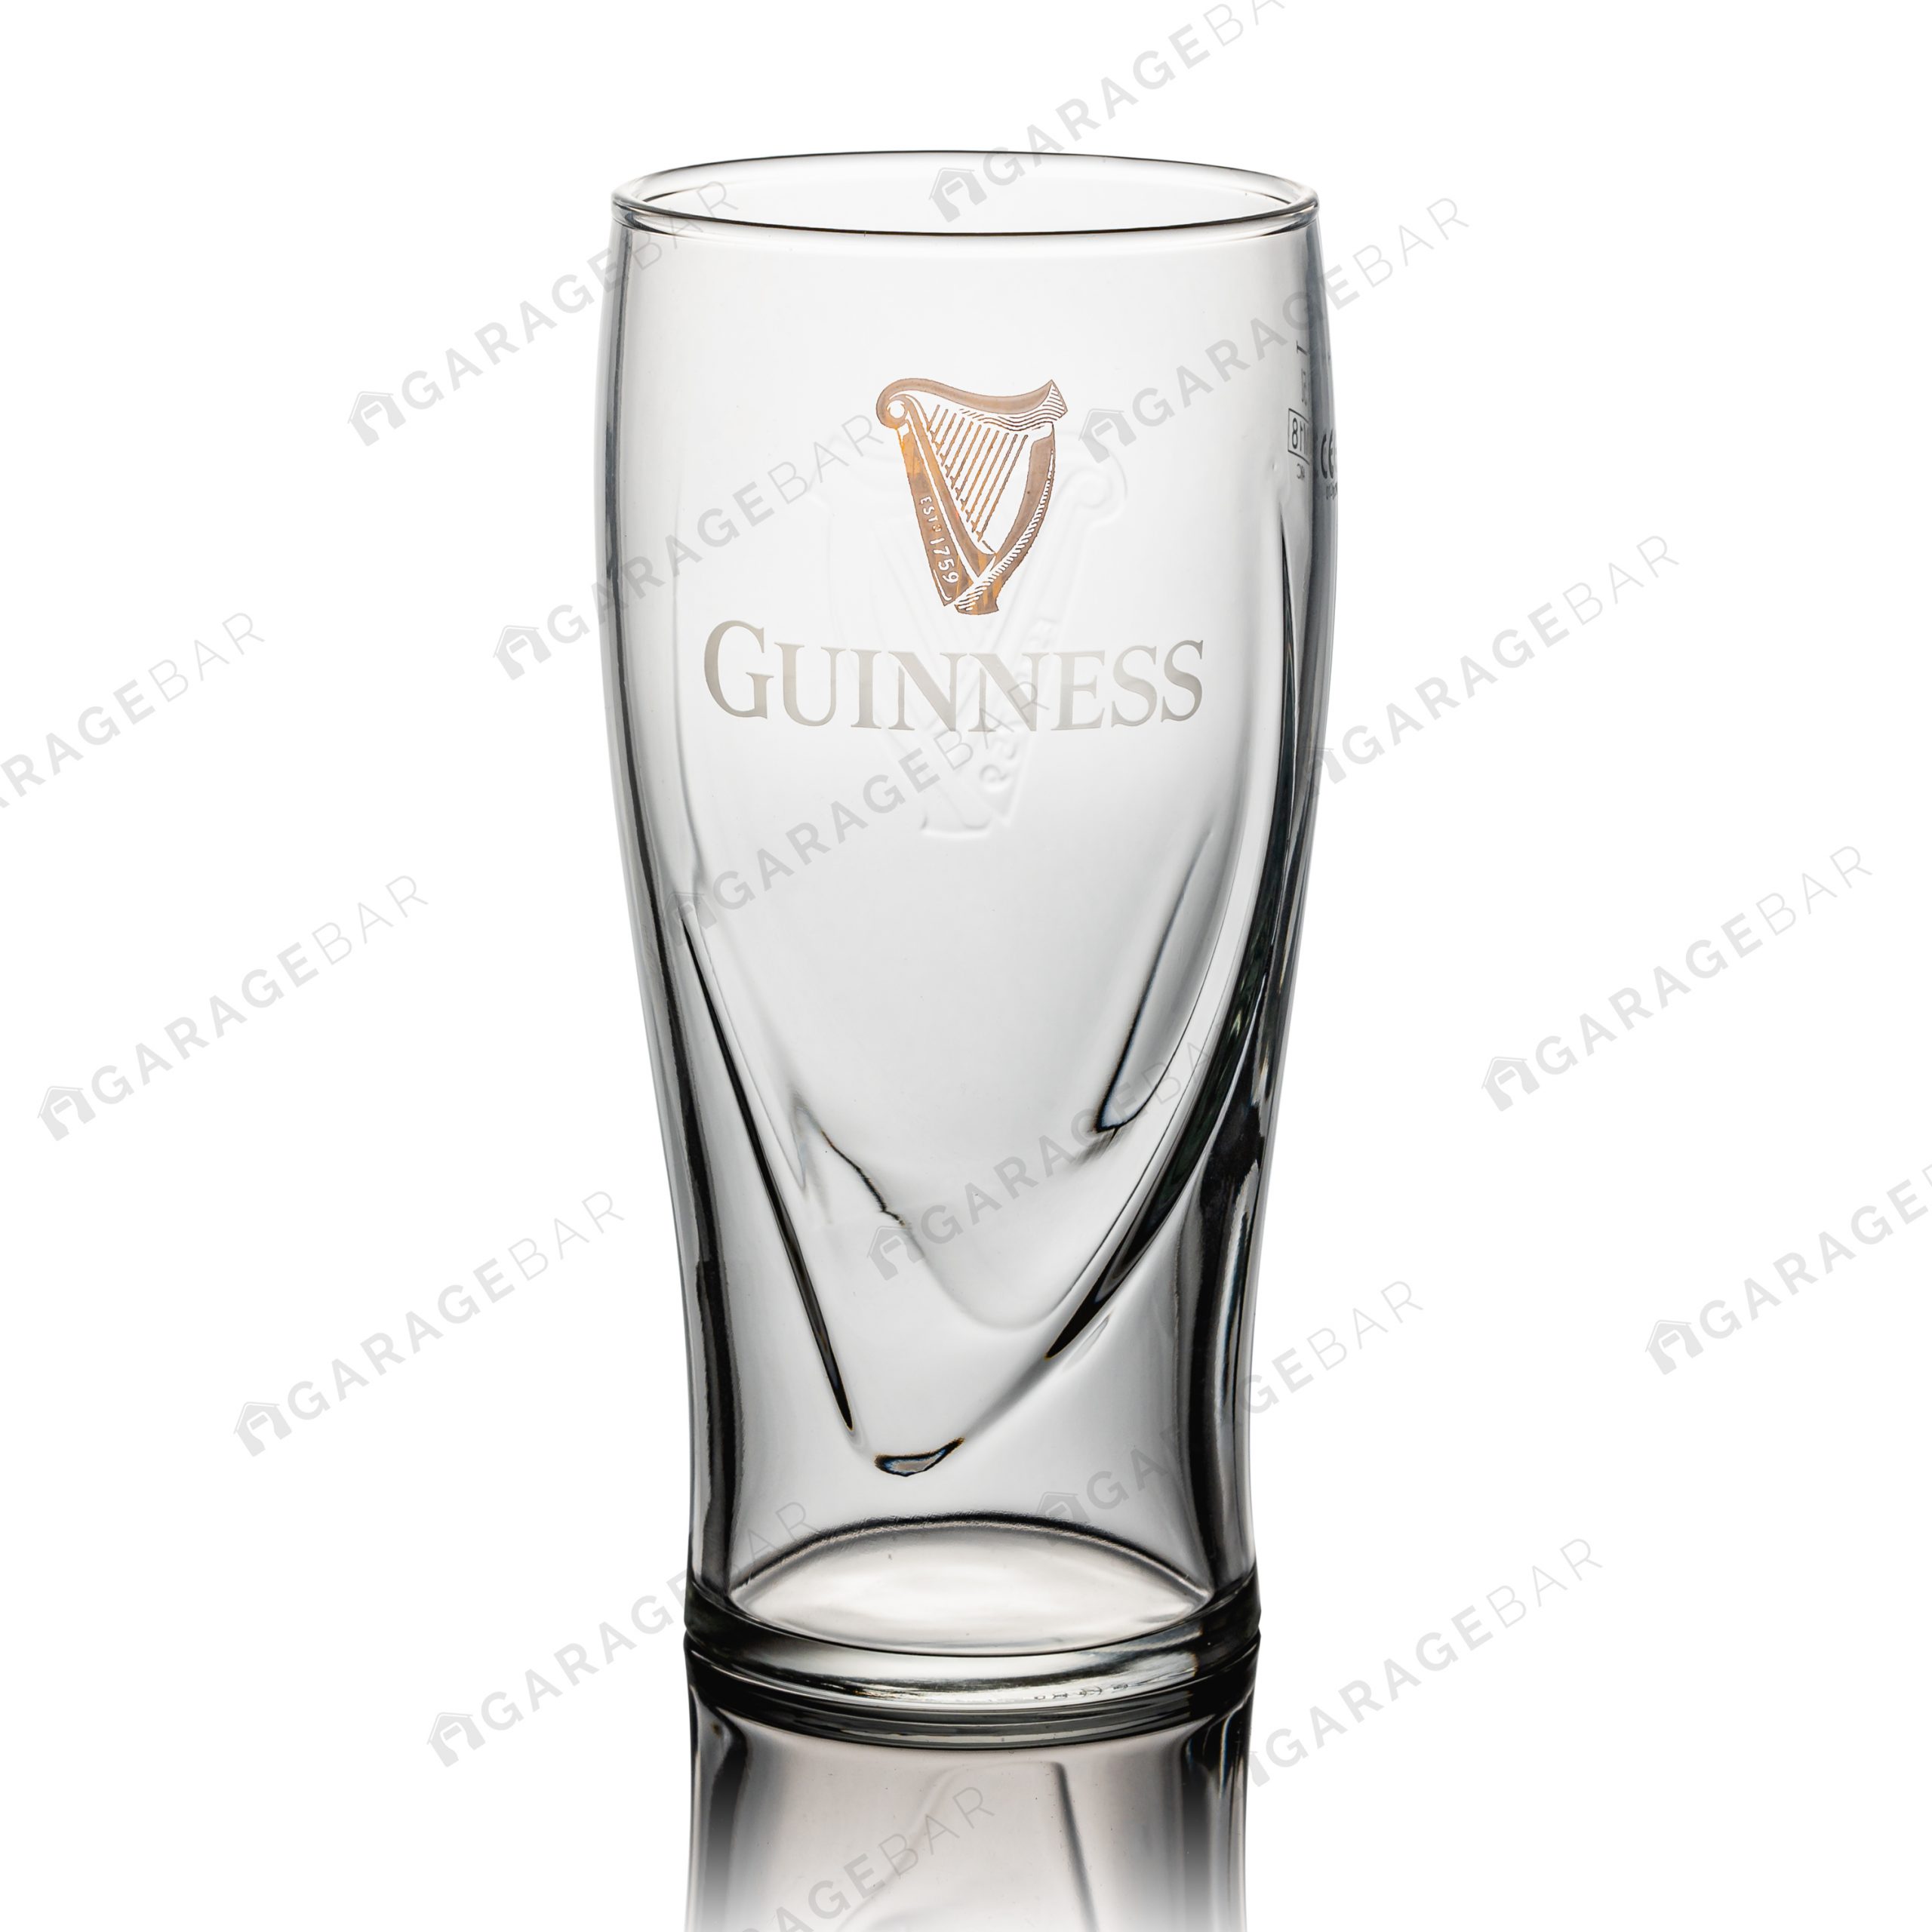 Guinness Harp Pint Beer Glass